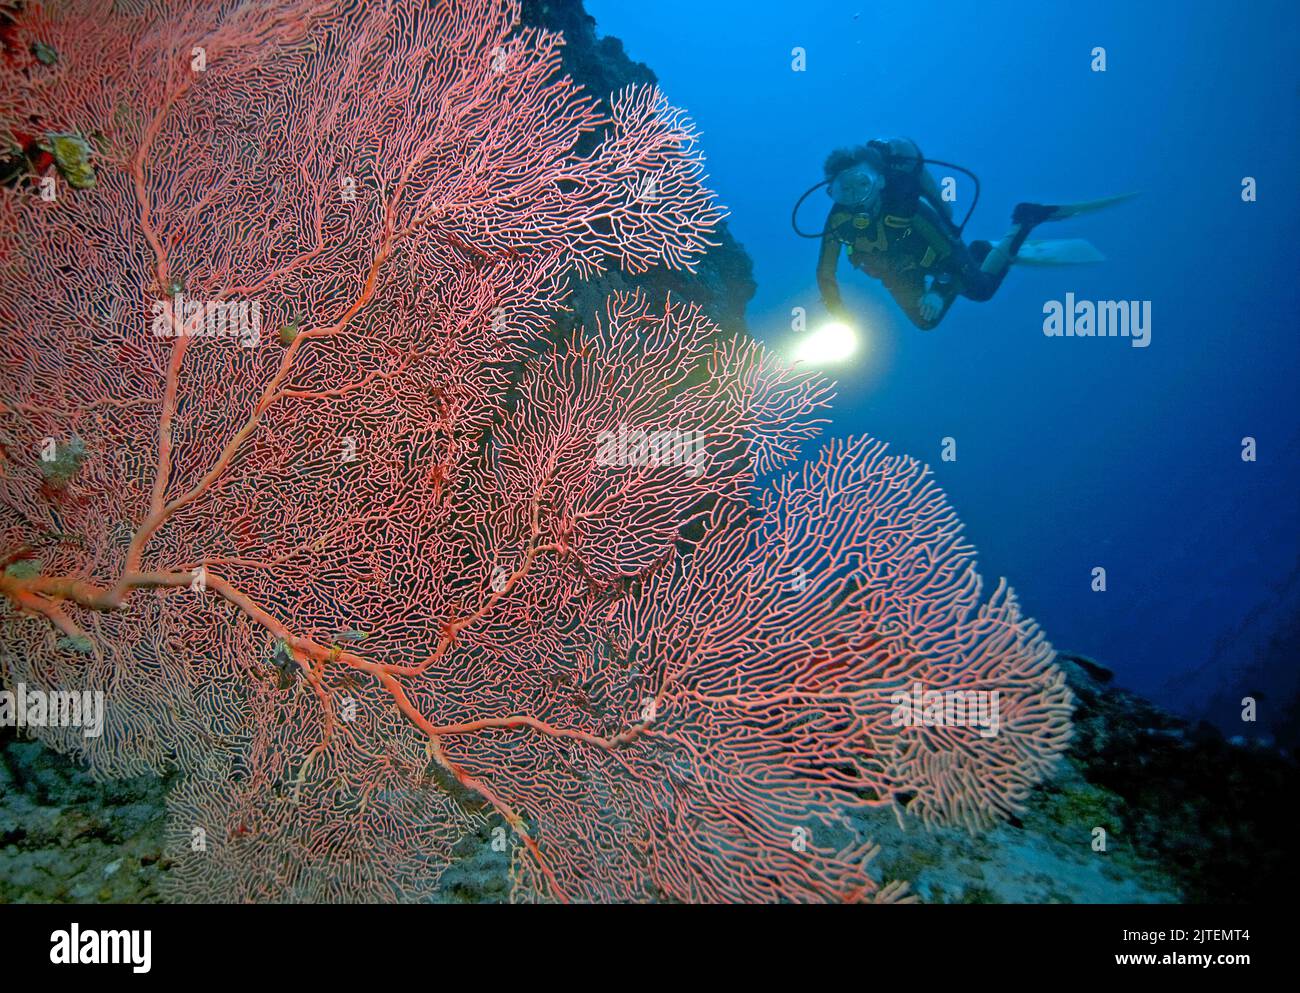 Tauchen an einem Korallenriff mit Riesenmeerfans (Annella mollis), Raa-Atoll, Malediven, Indischer Ozean, Asien Stockfoto